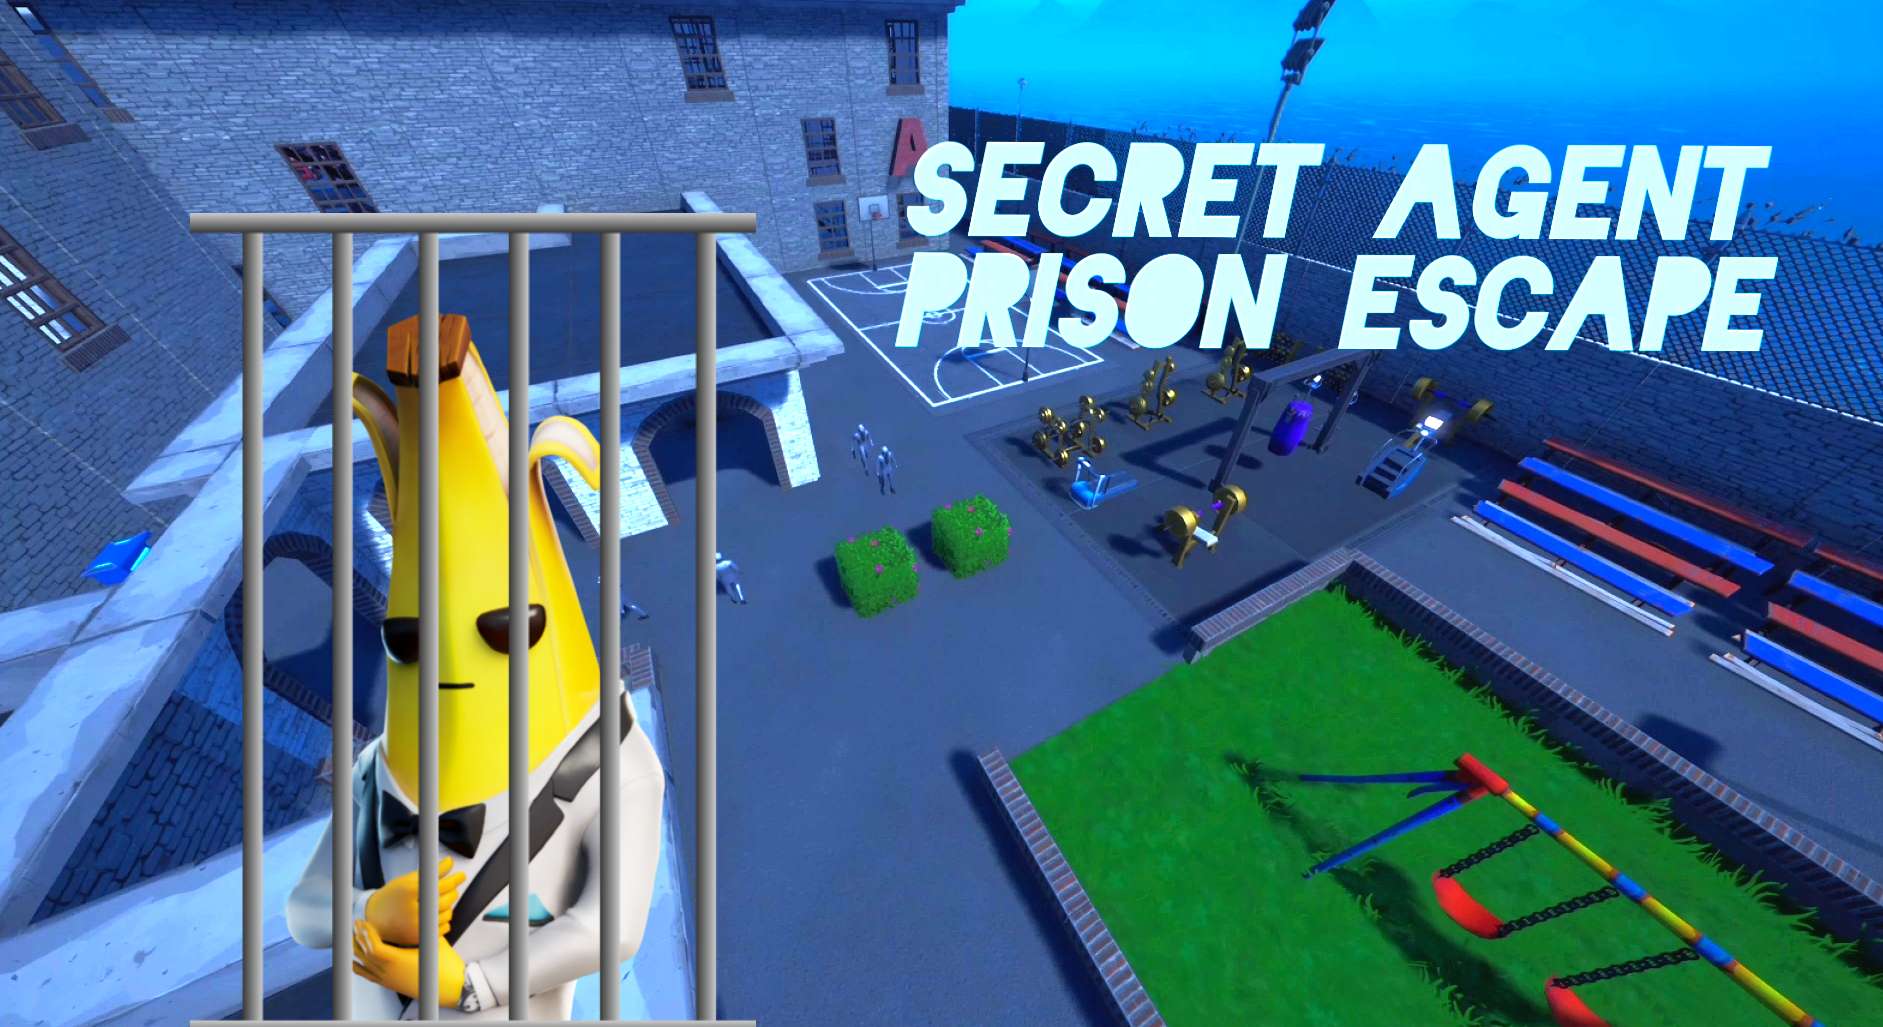 Secret Agent Prison Escape